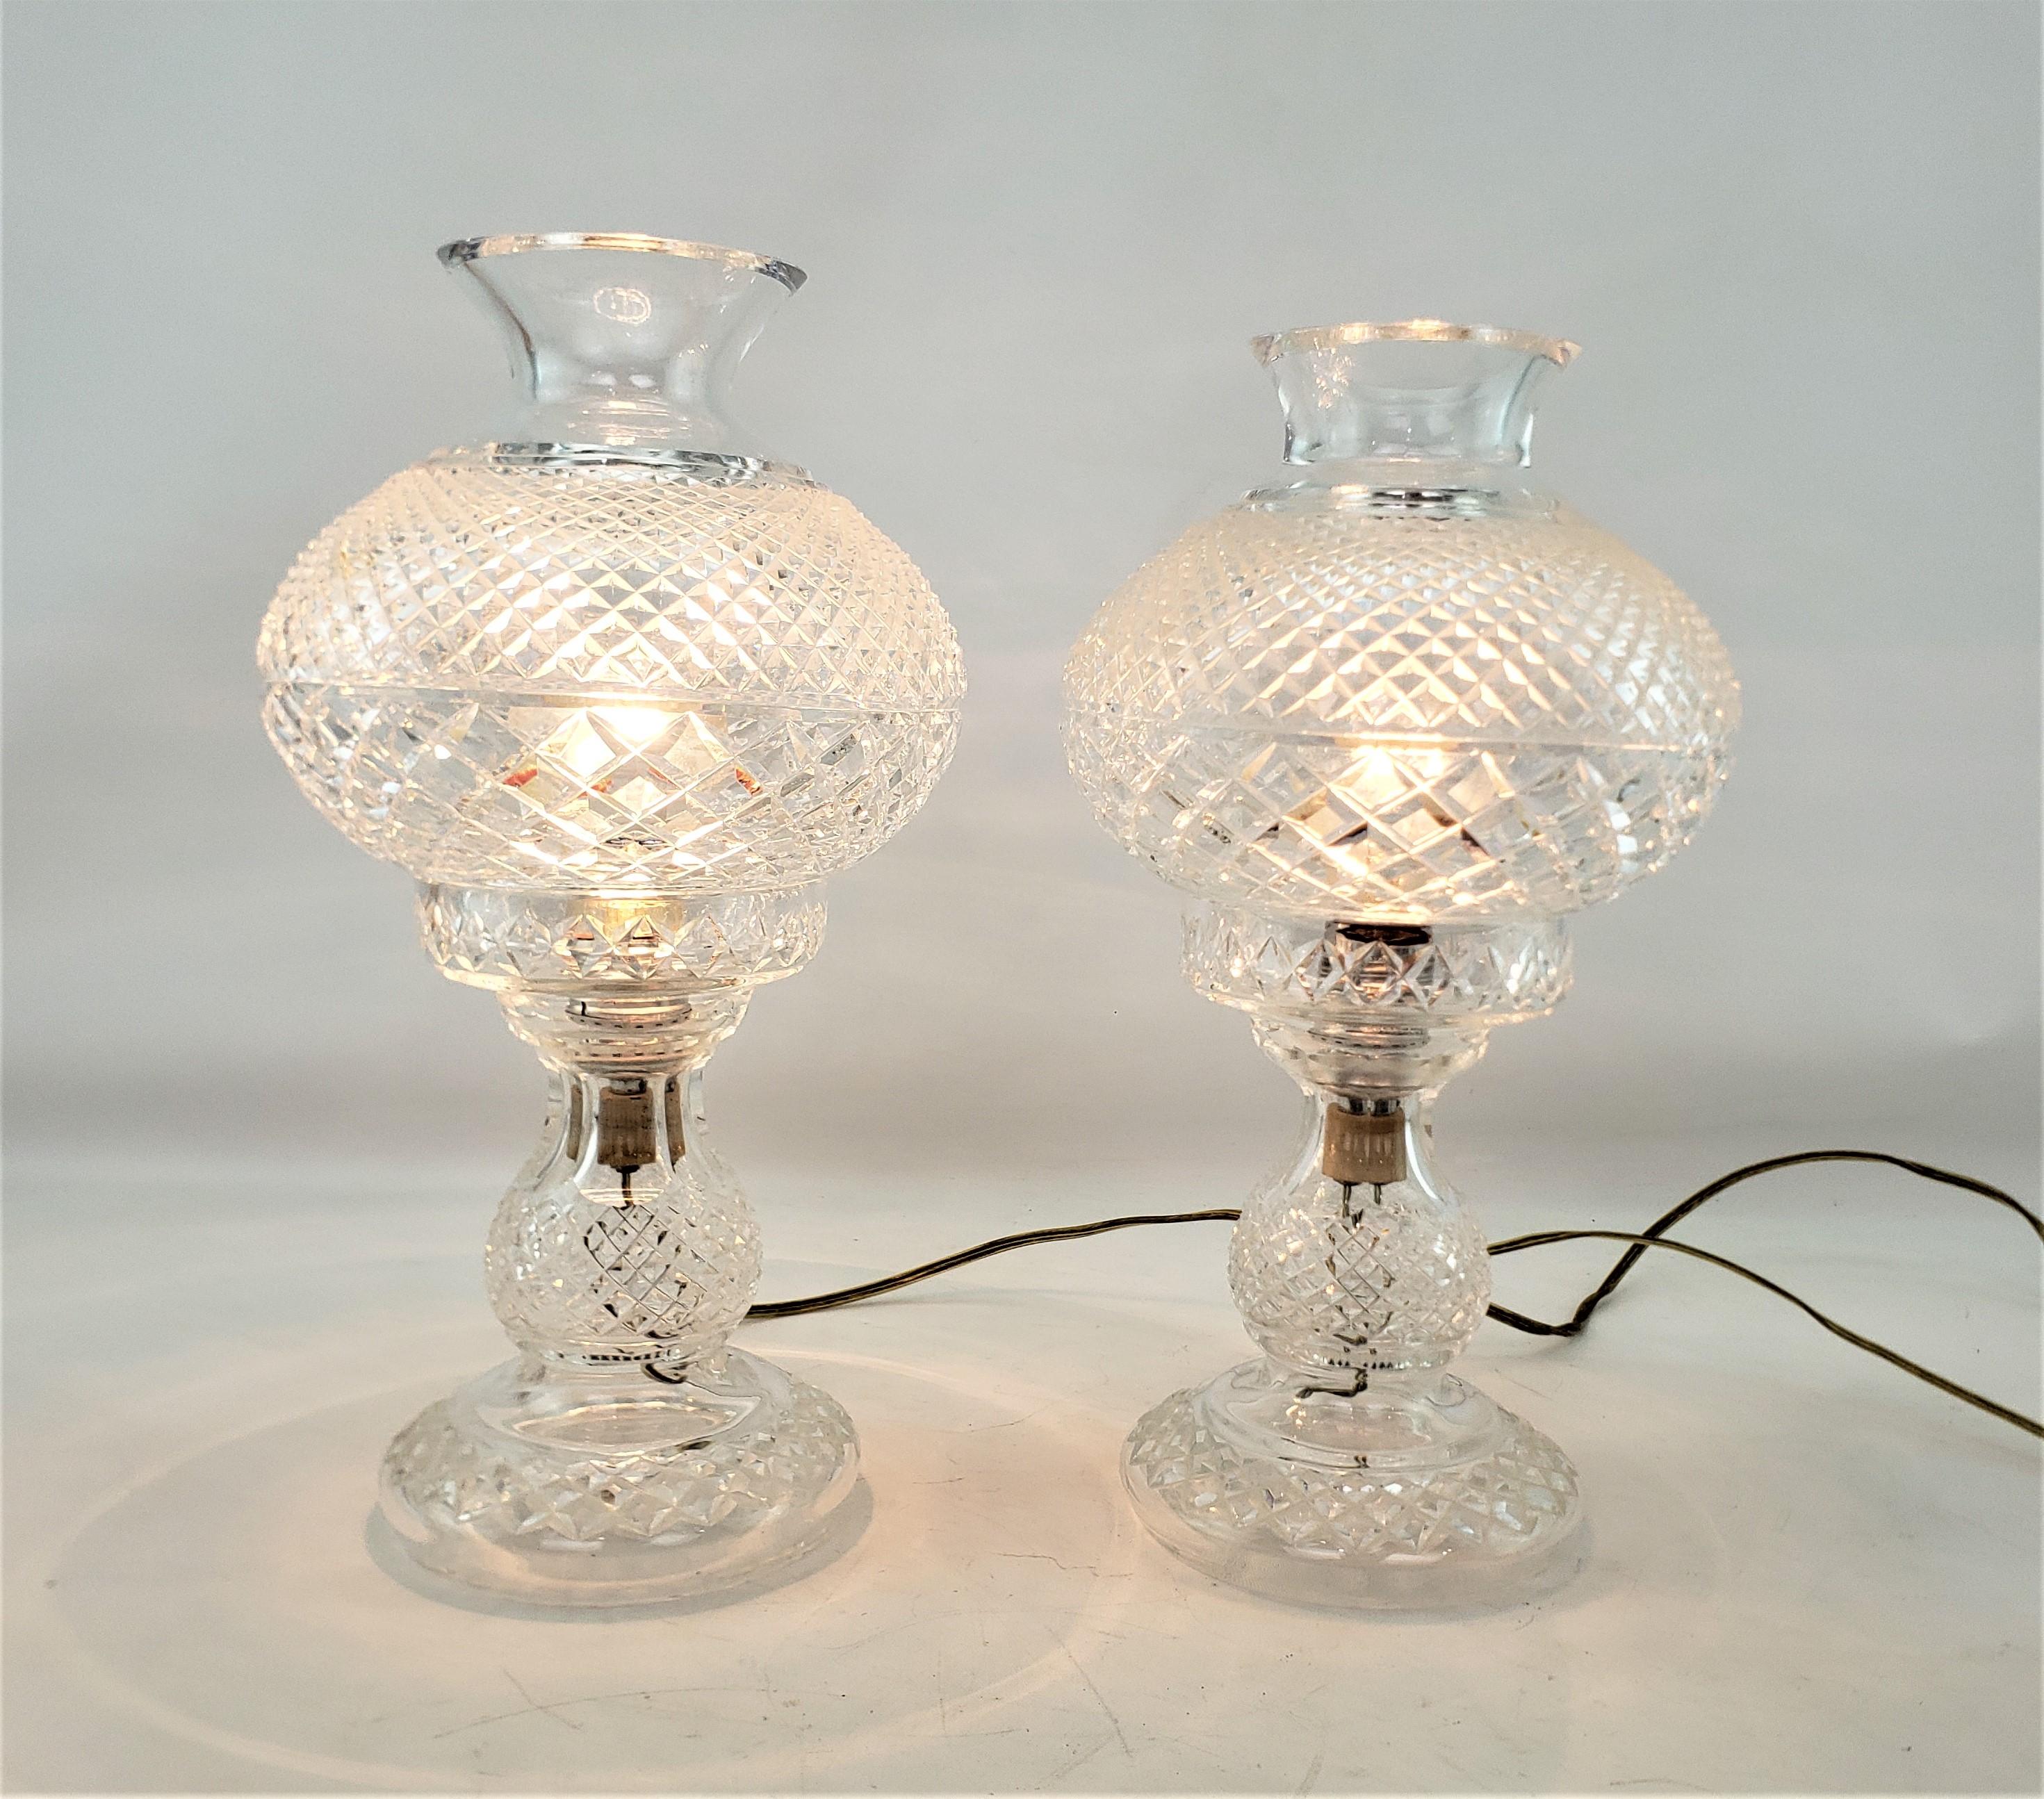 Cette paire de lampes anciennes a été fabriquée par la célèbre société irlandaise Waterford vers 1920 et a été réalisée dans un style d'époque. Les lampes sont composées de cristal taillé avec un motif de diamant sur l'abat-jour et la base. Ces